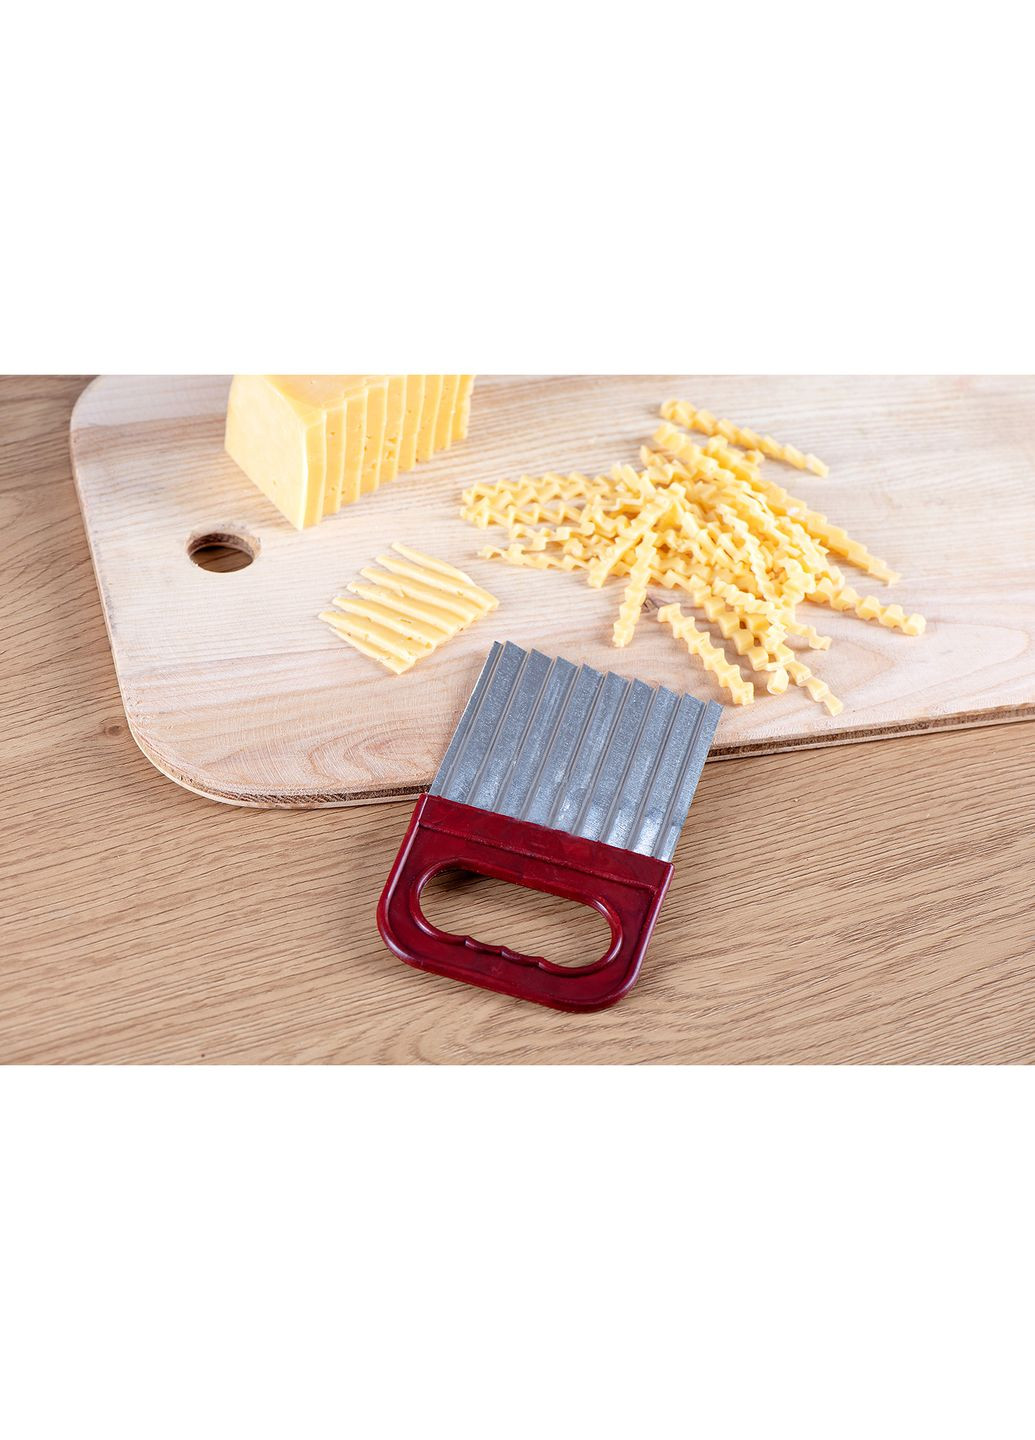 Сырорезка нож для нарезки сыра овощерезка большая с ручкой (14x9 см) Kitchette (278014718)